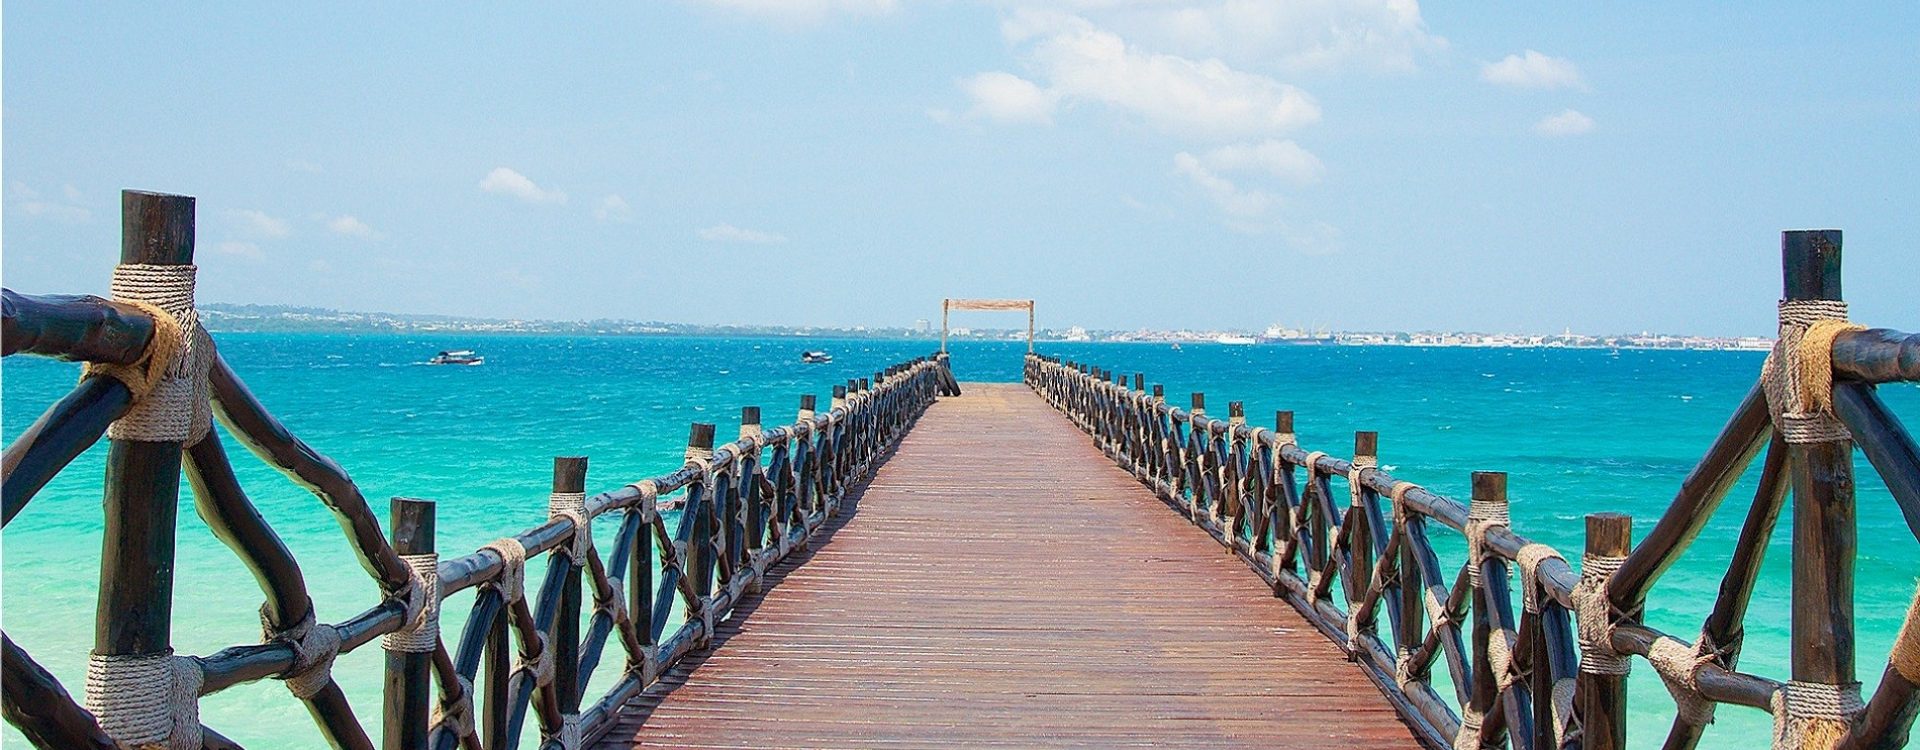 Zanzibar - putovanje prepuno kontrasta poput ovog mola koji ulazi u more